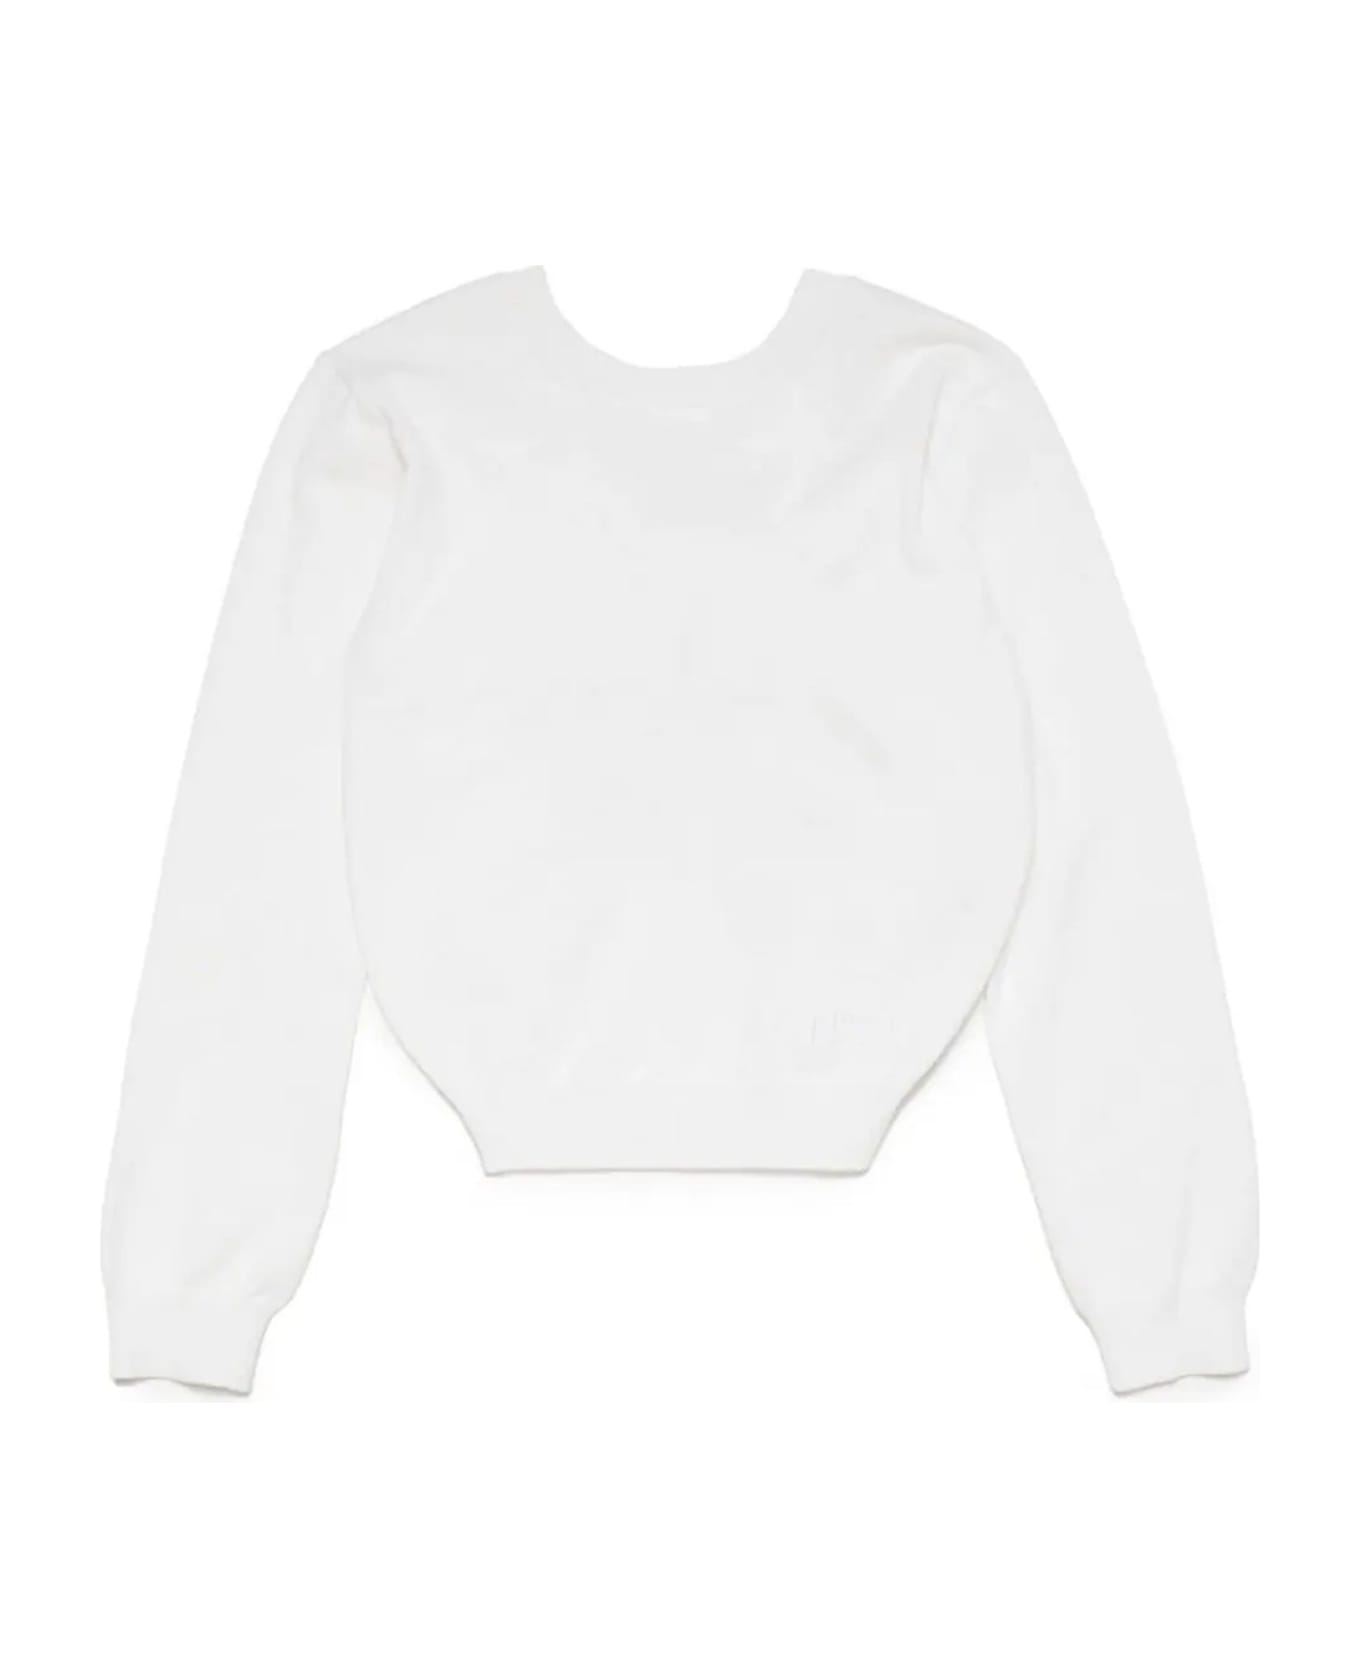 N.21 N°21 Sweaters White - White ニットウェア＆スウェットシャツ